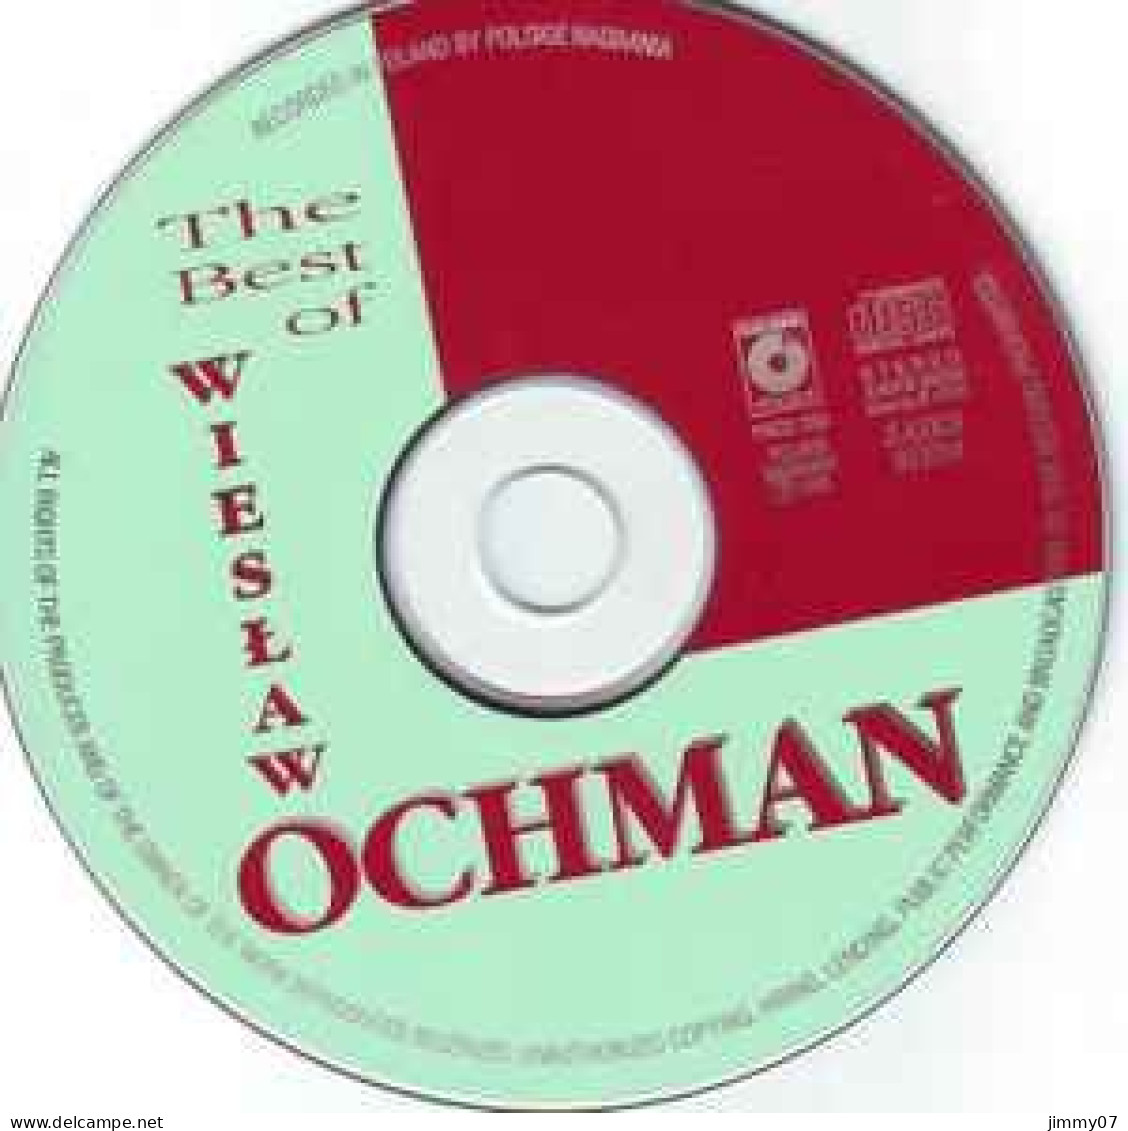 Wiesław Ochman - The Best Of (CD, Comp) - Classical